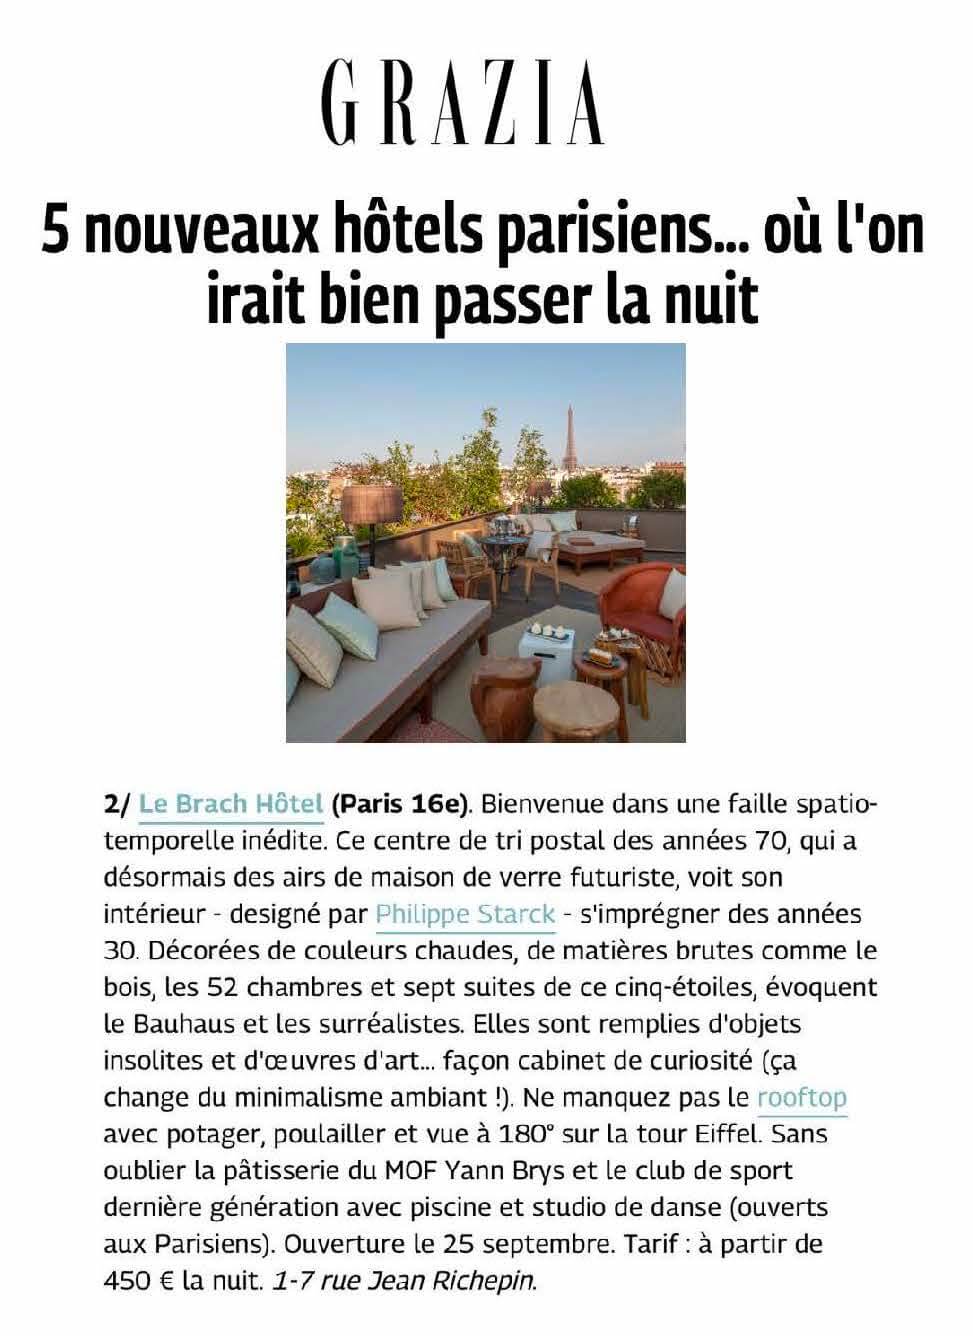 Grazia  : 5 Hotels parisiens ou l'on irait bien passer la nuit